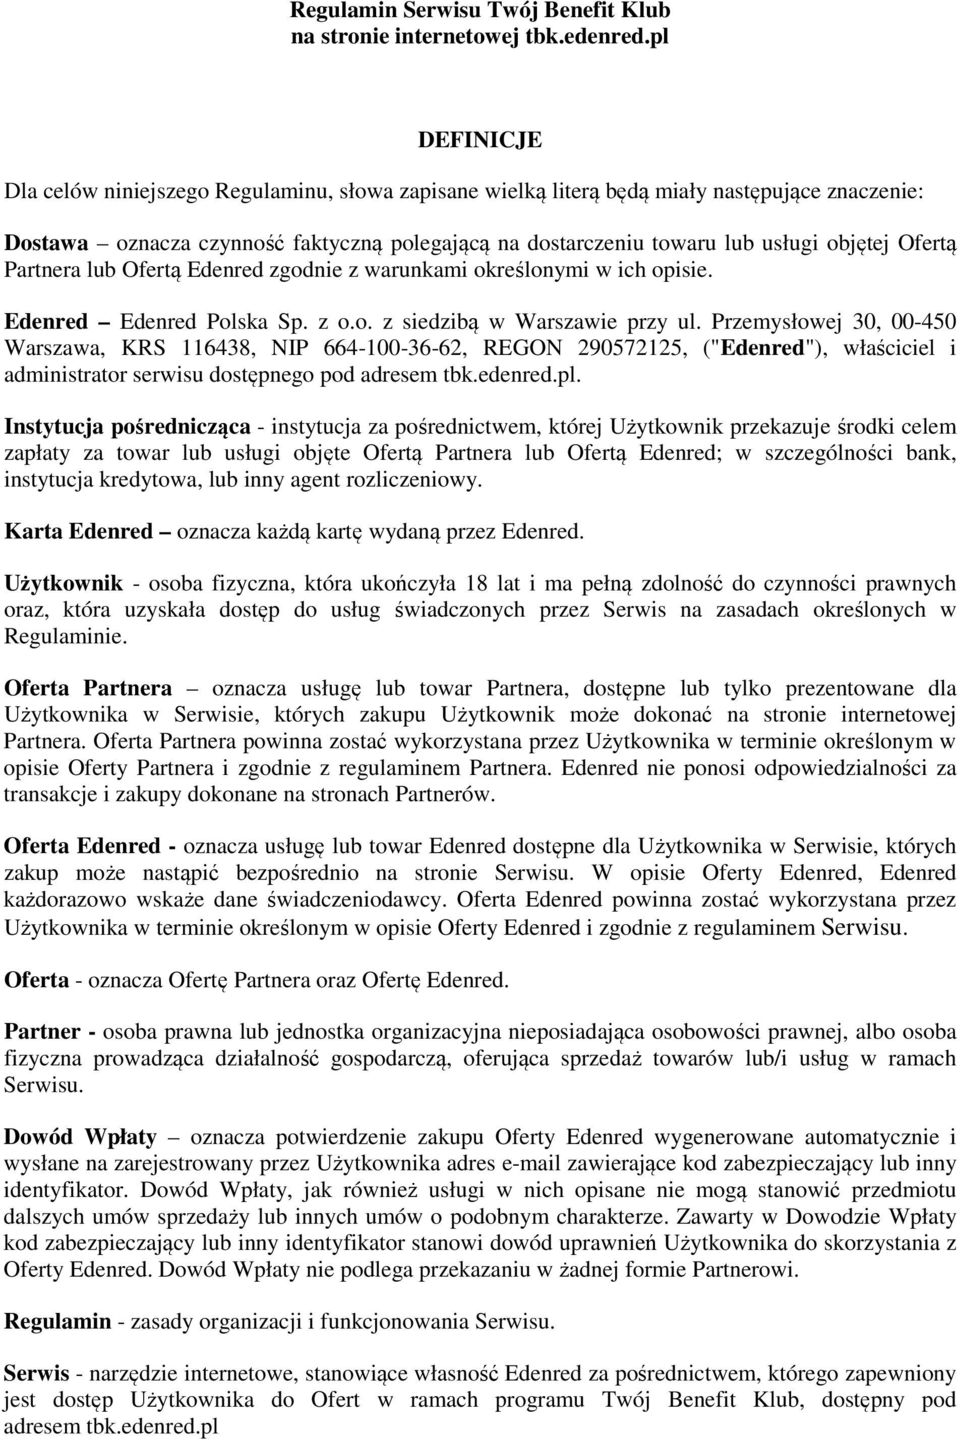 Regulamin Serwisu Twój Benefit Klub na stronie internetowej tbk.edenred.pl  DEFINICJE - PDF Free Download